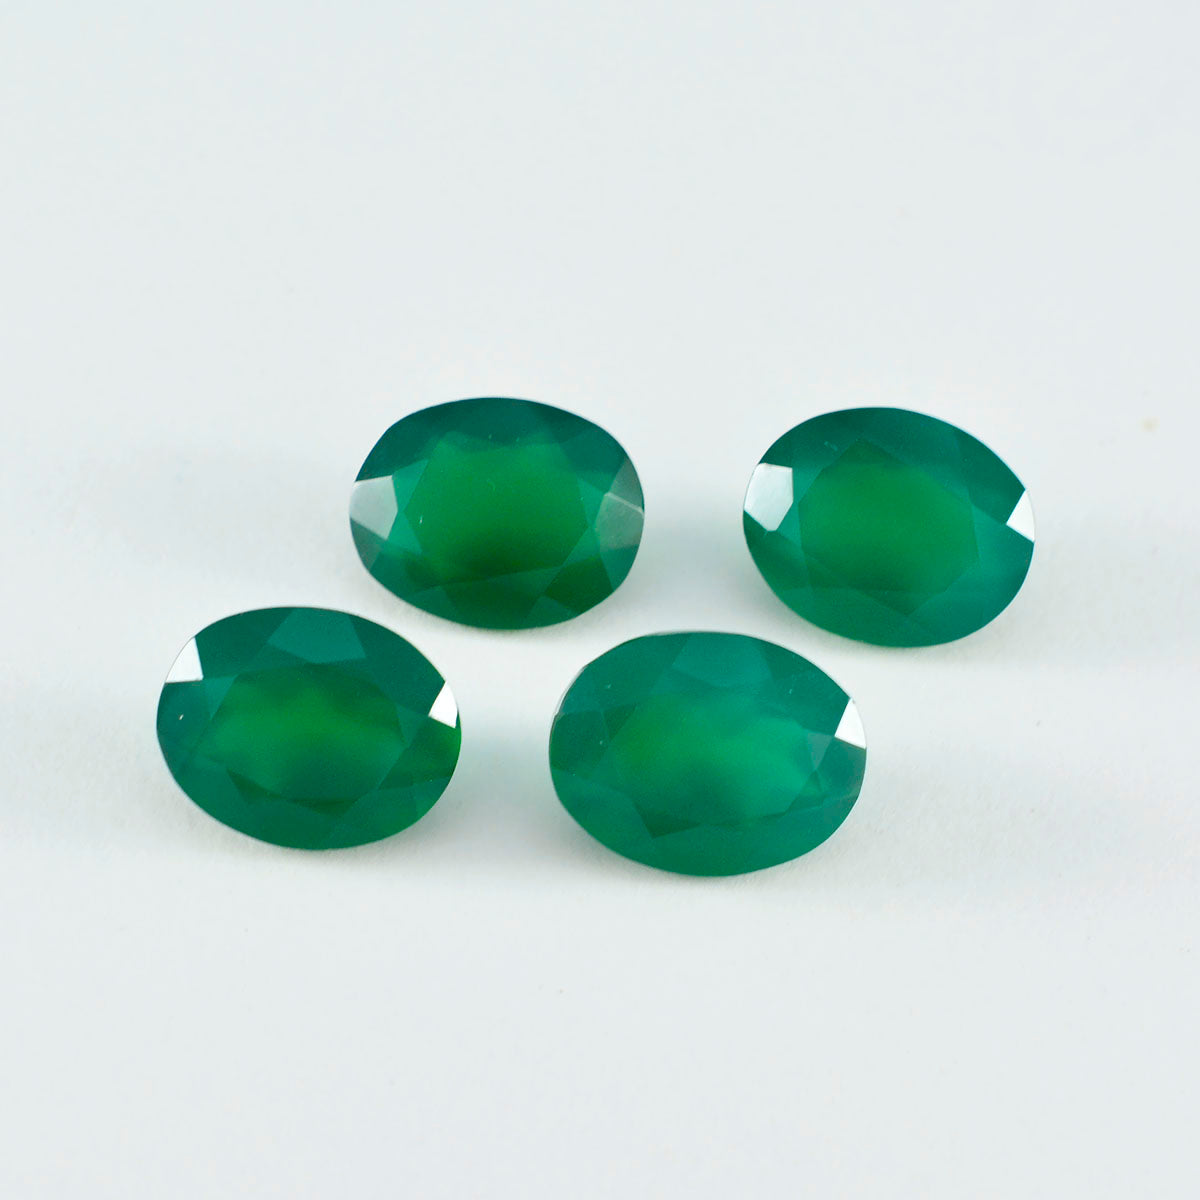 riyogems 1 шт. натуральный зеленый оникс граненый 7x9 мм овальной формы красивый качественный драгоценный камень